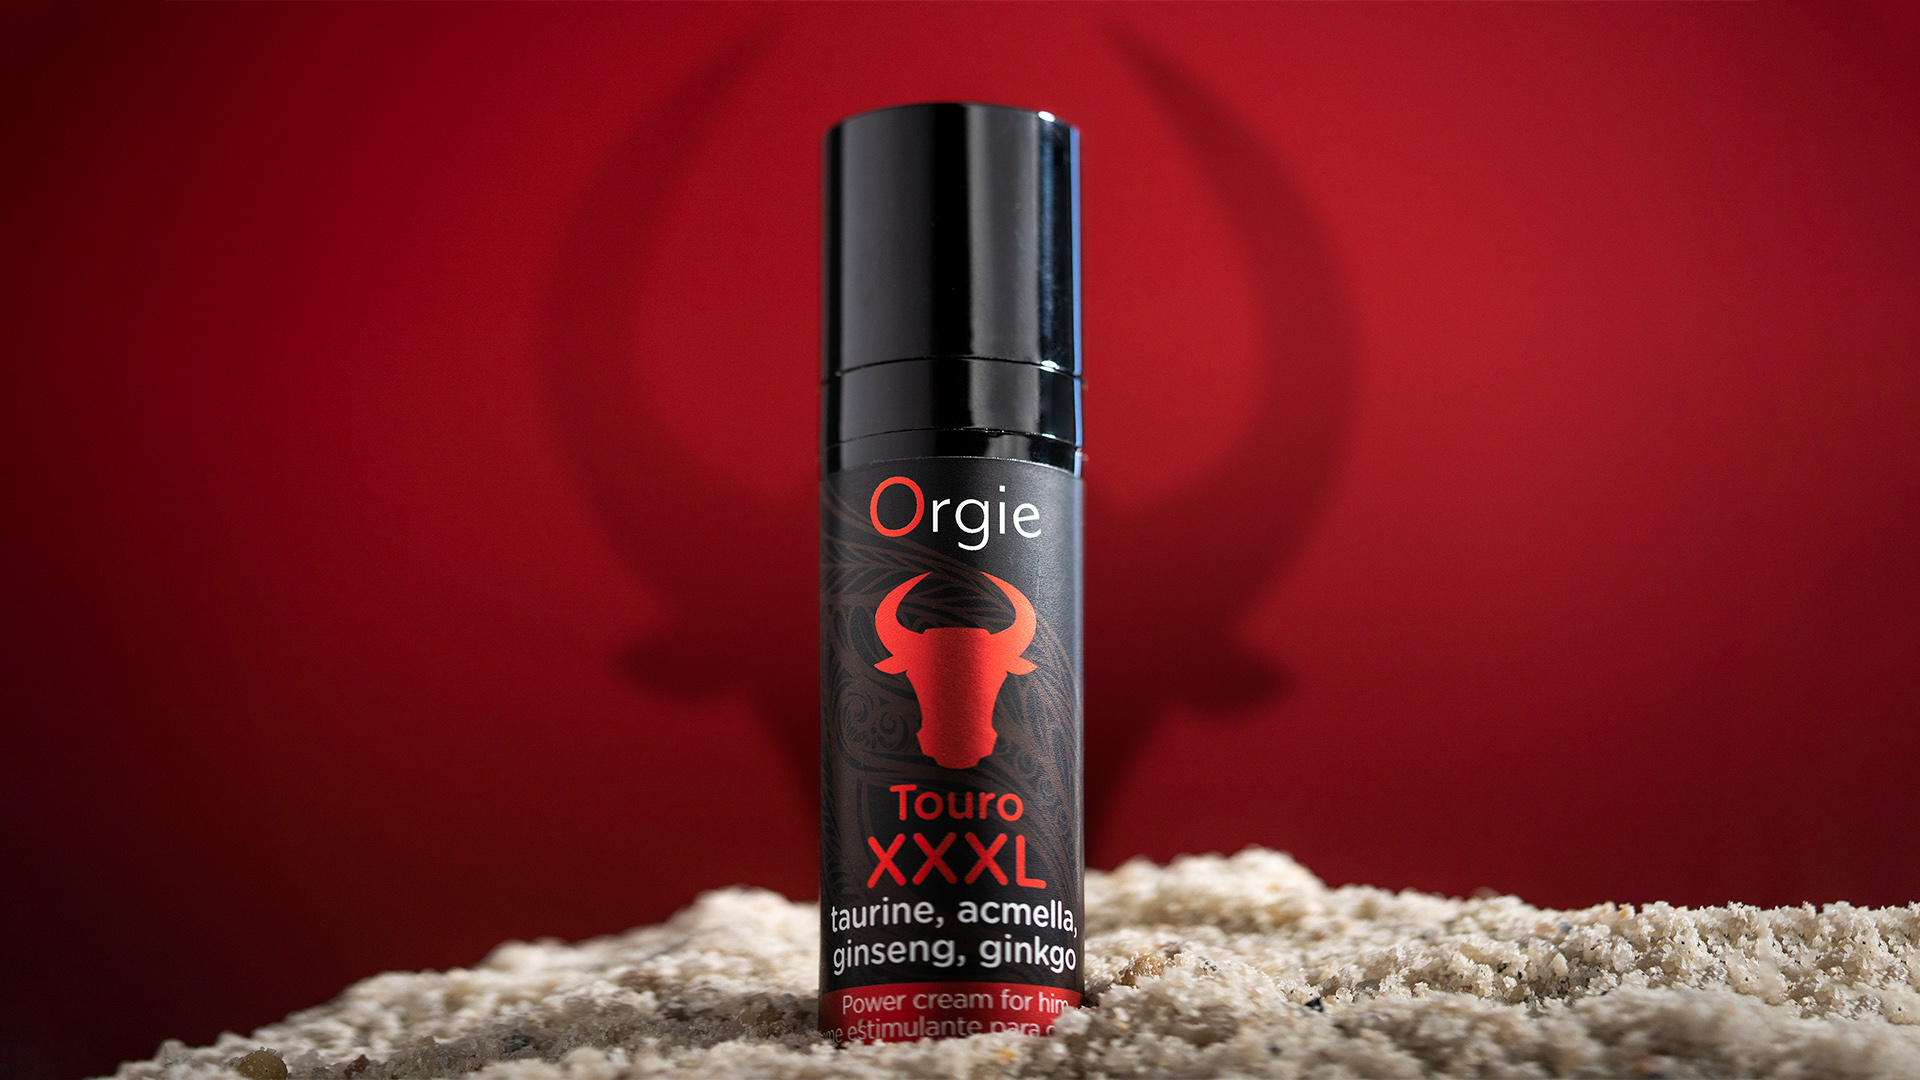 ORGIE Touro XXXL Power Cream